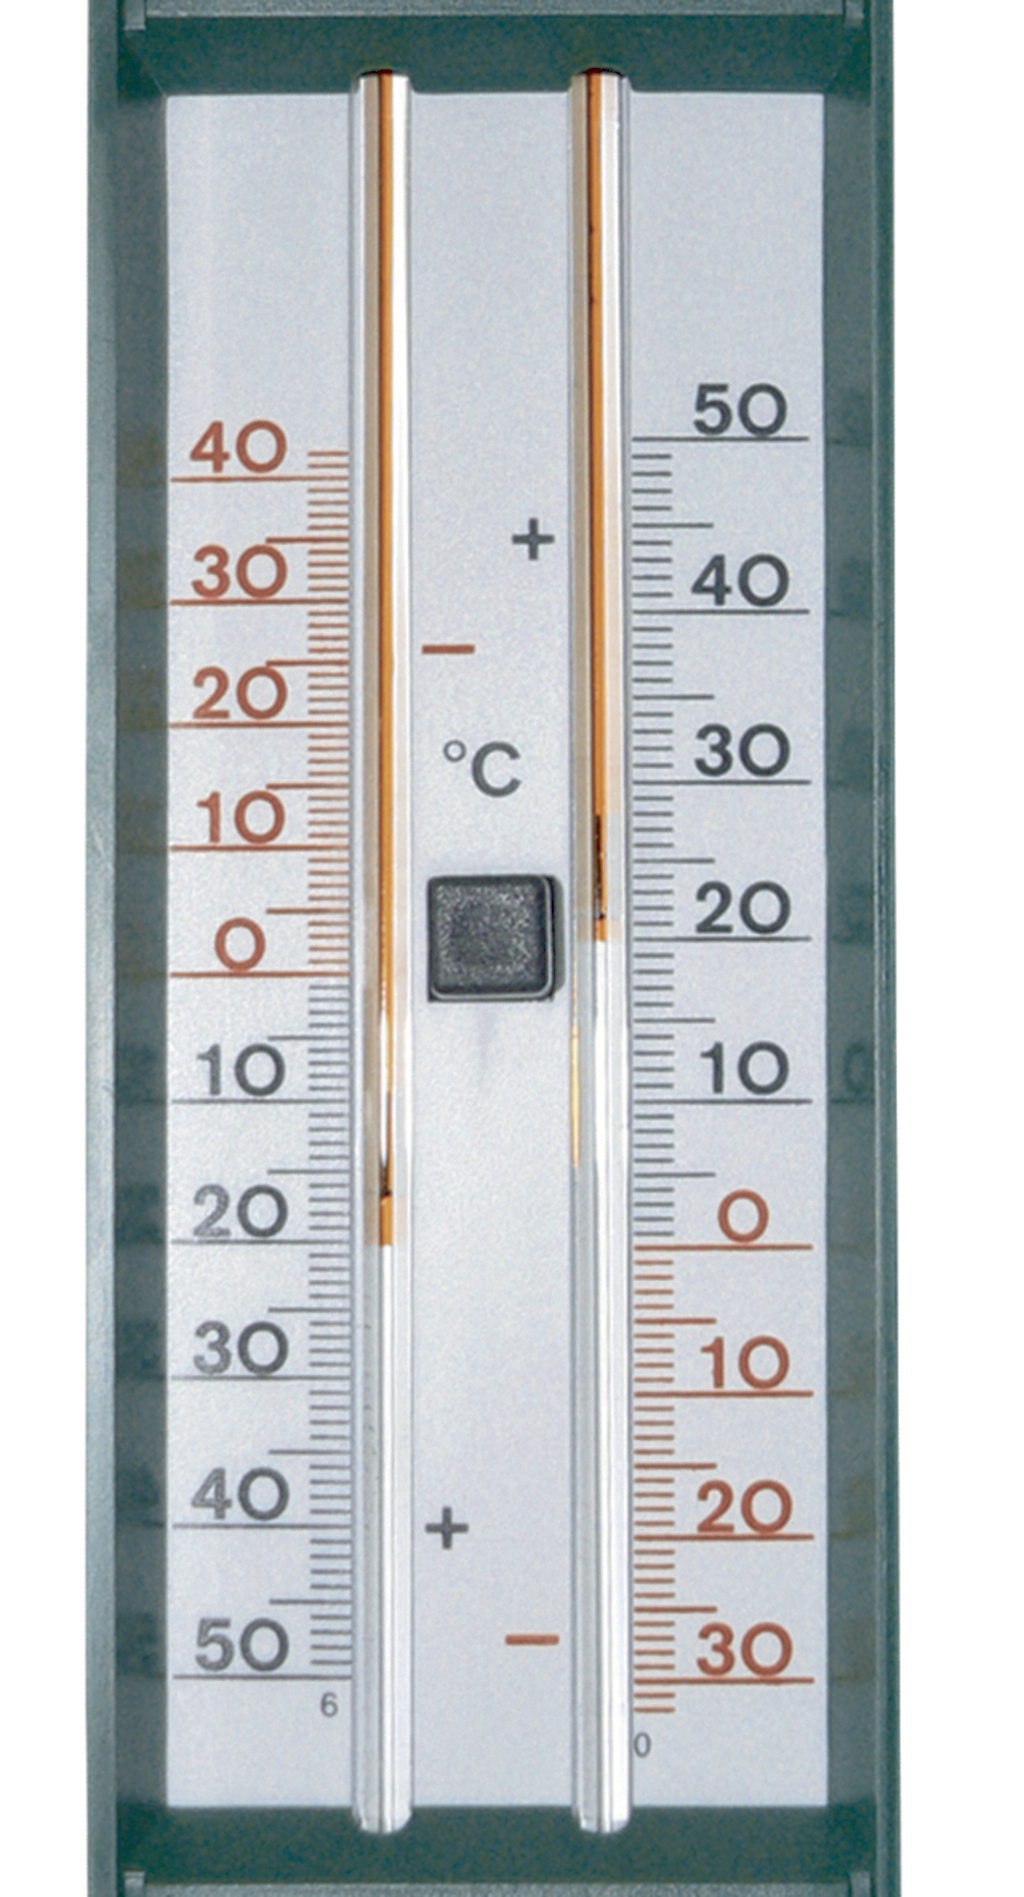 Herramientas para el jardín : termómetro y pluviómetro - Nortene - Nortene